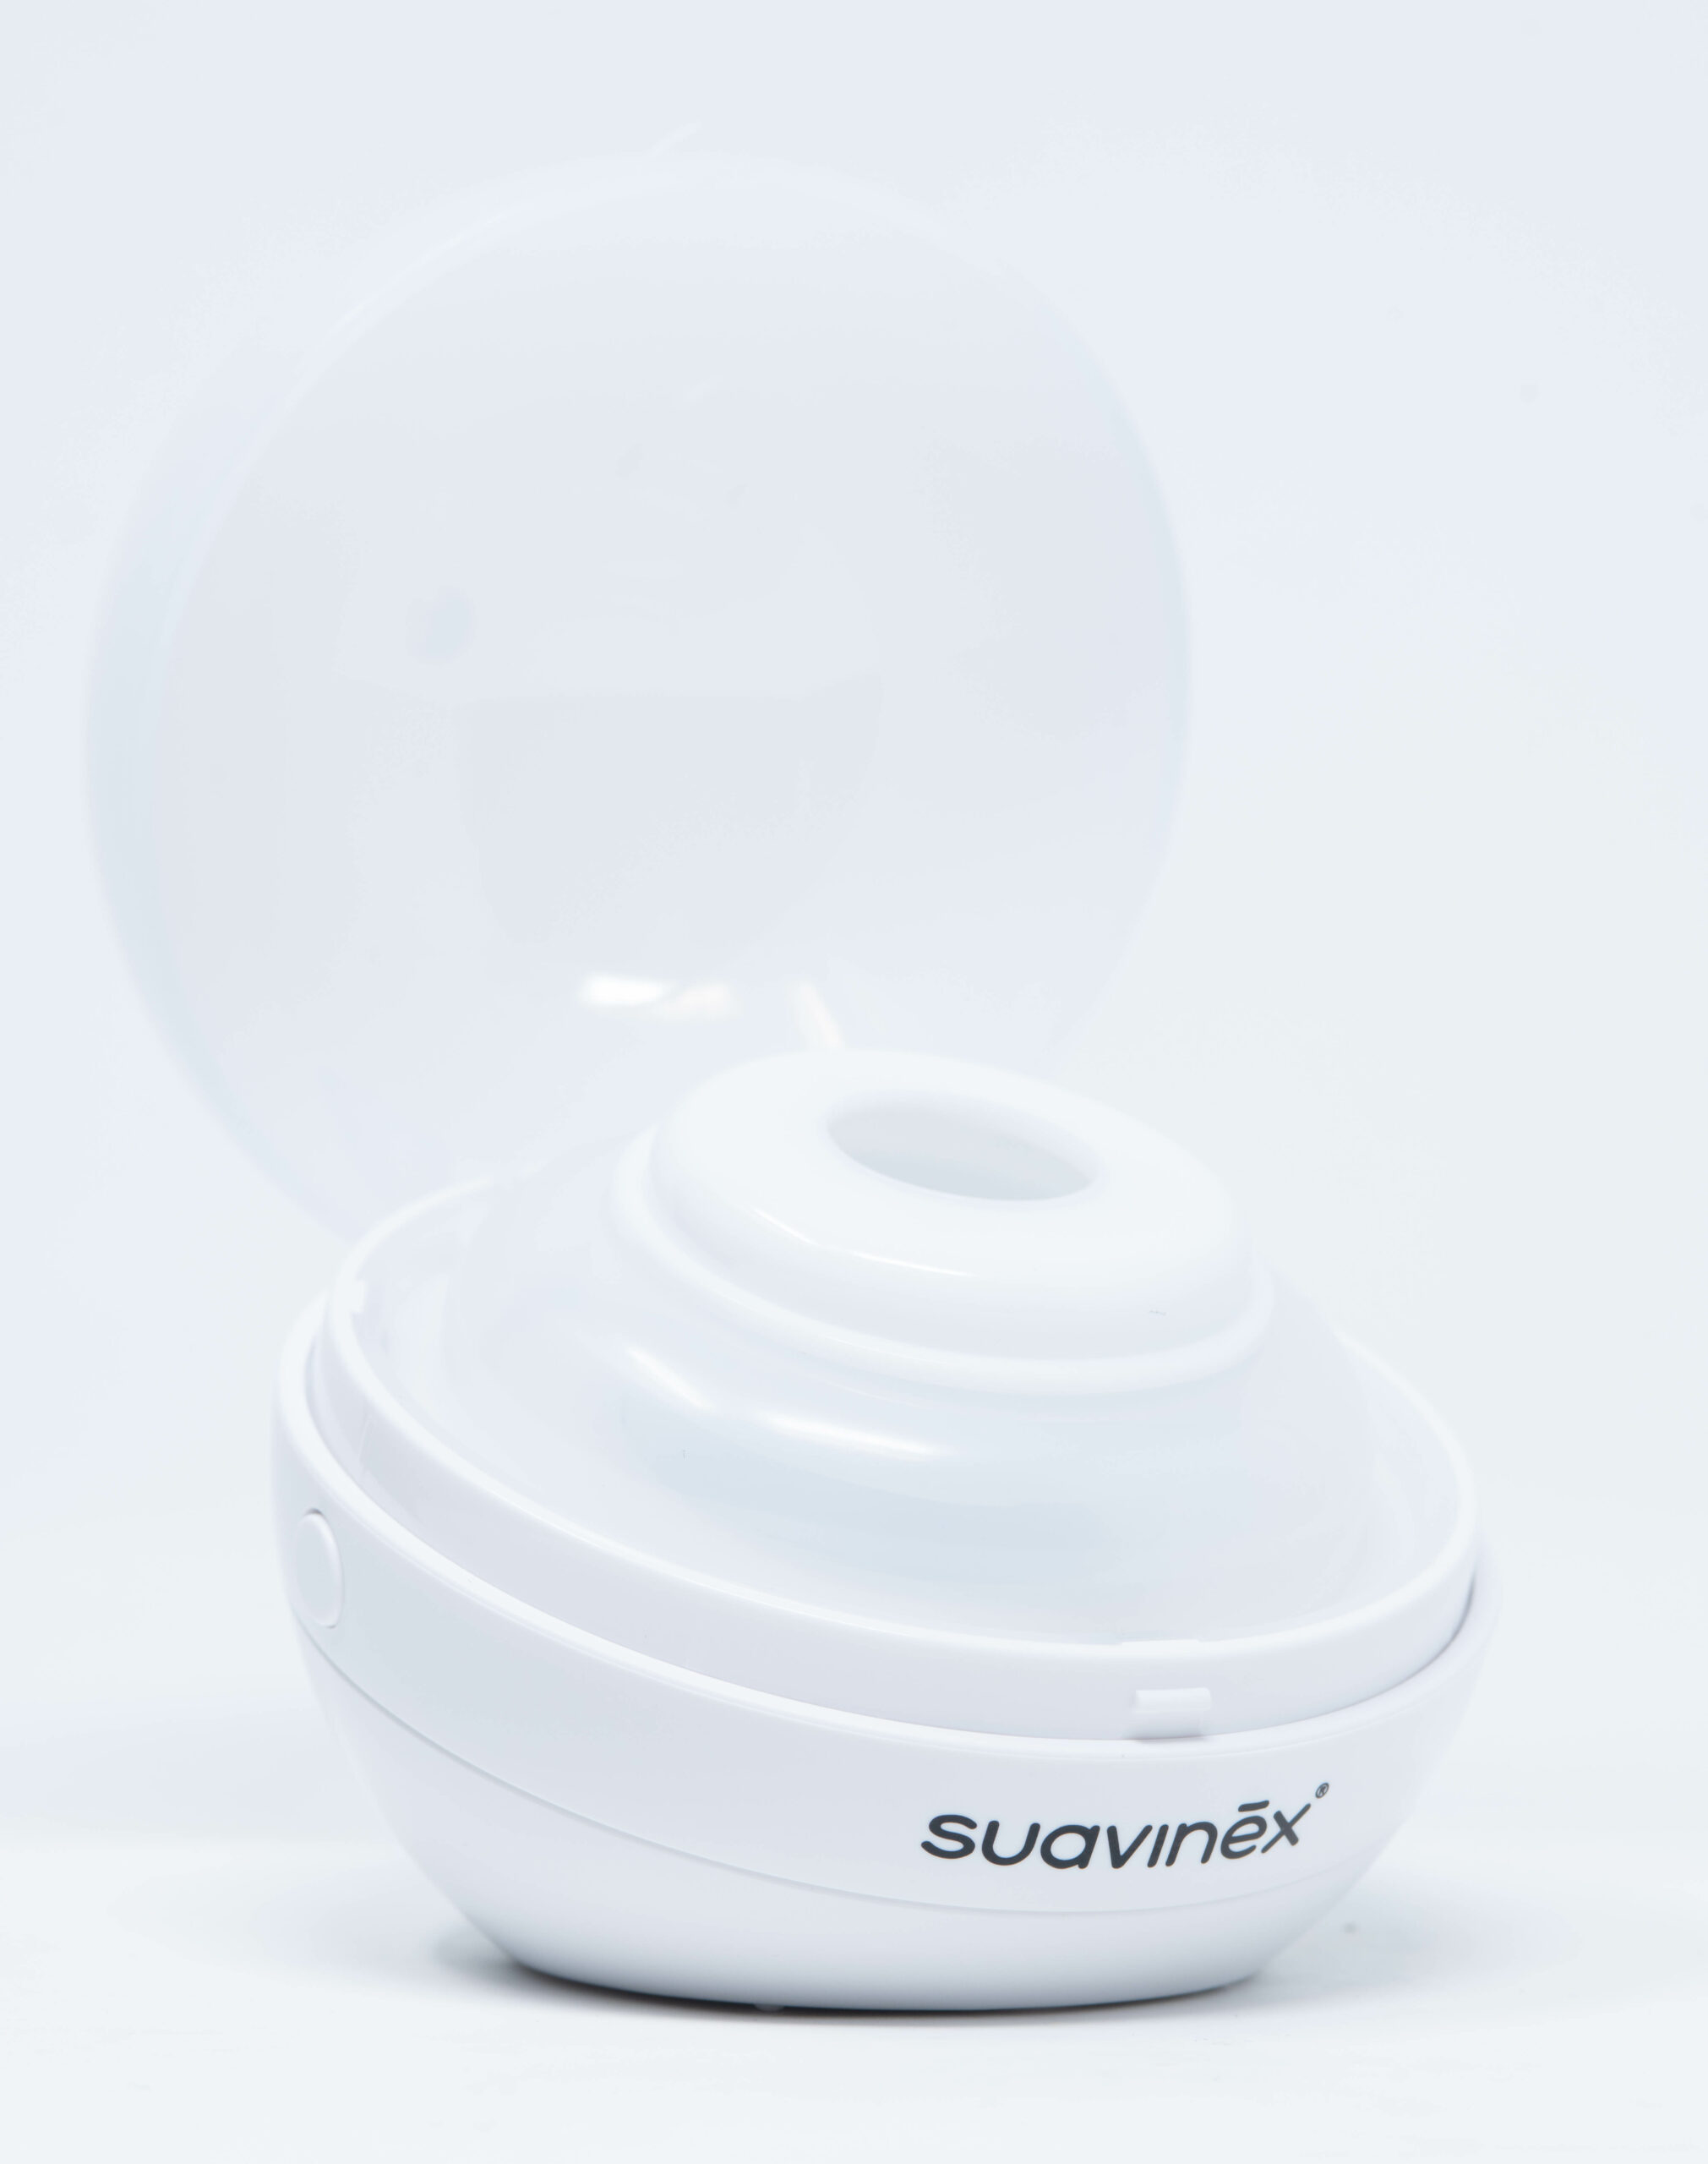 Suavinex Sterilizzaciuccio Duccio - Perla